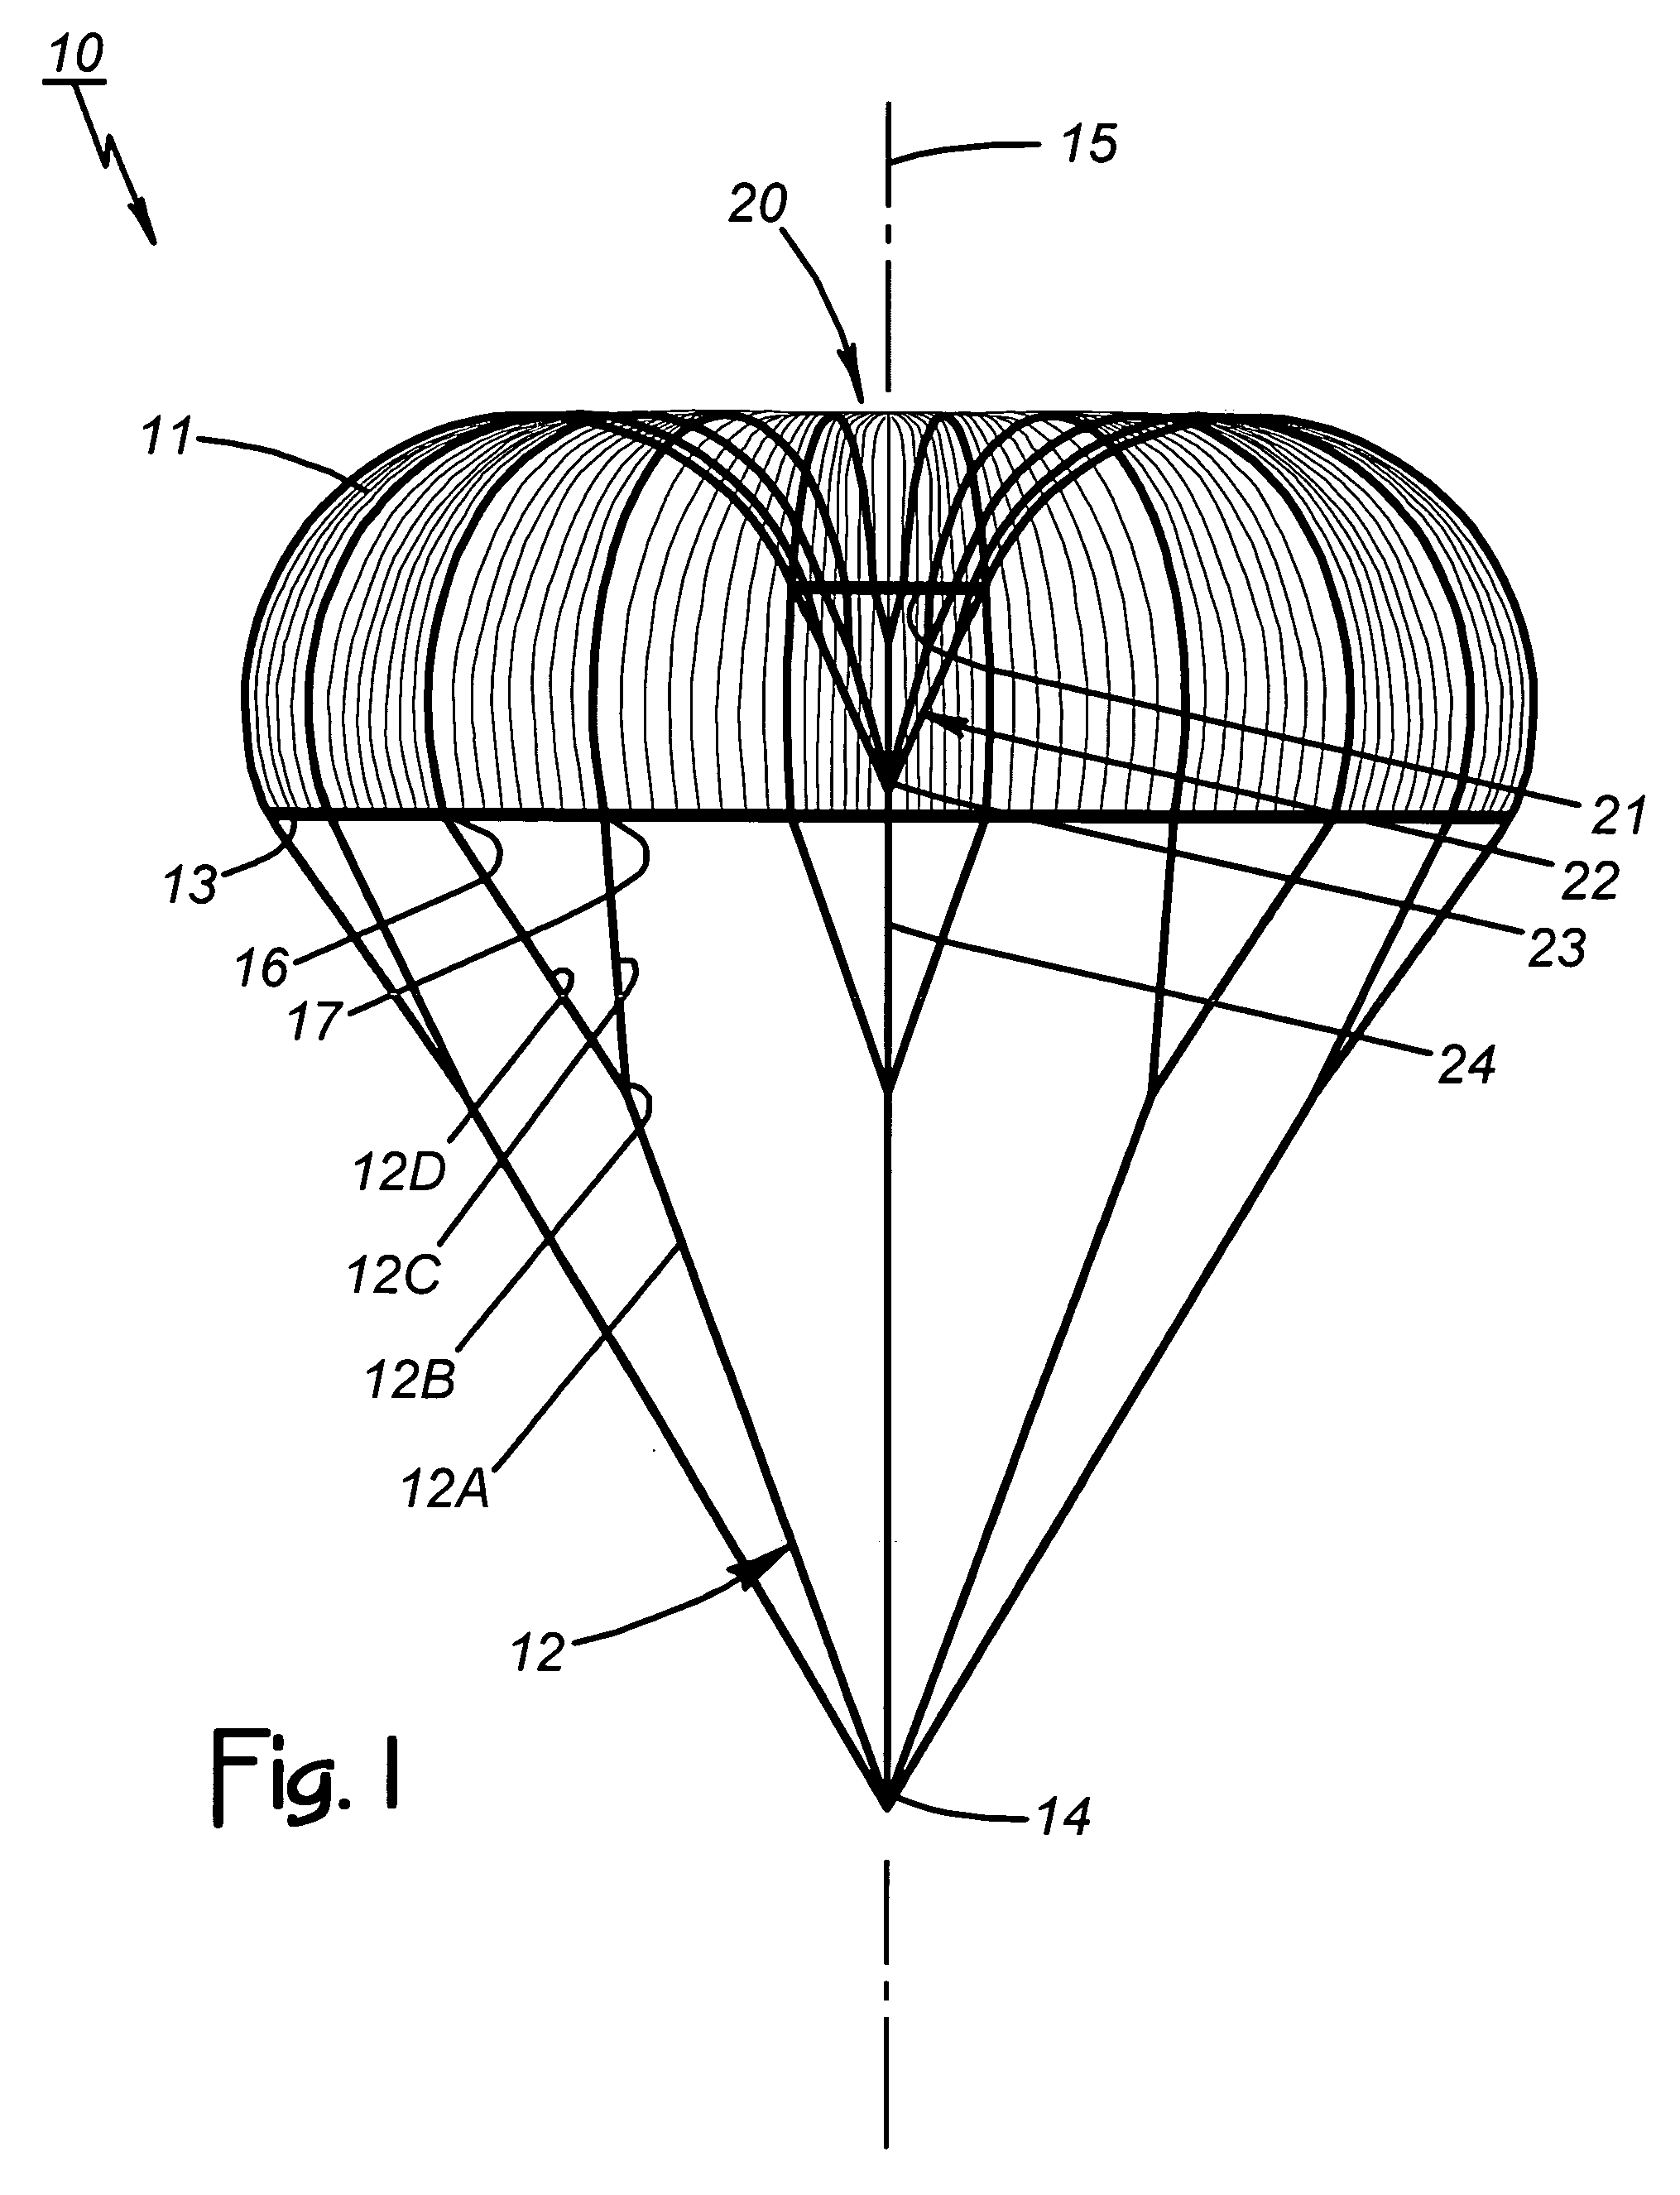 Circular parachute